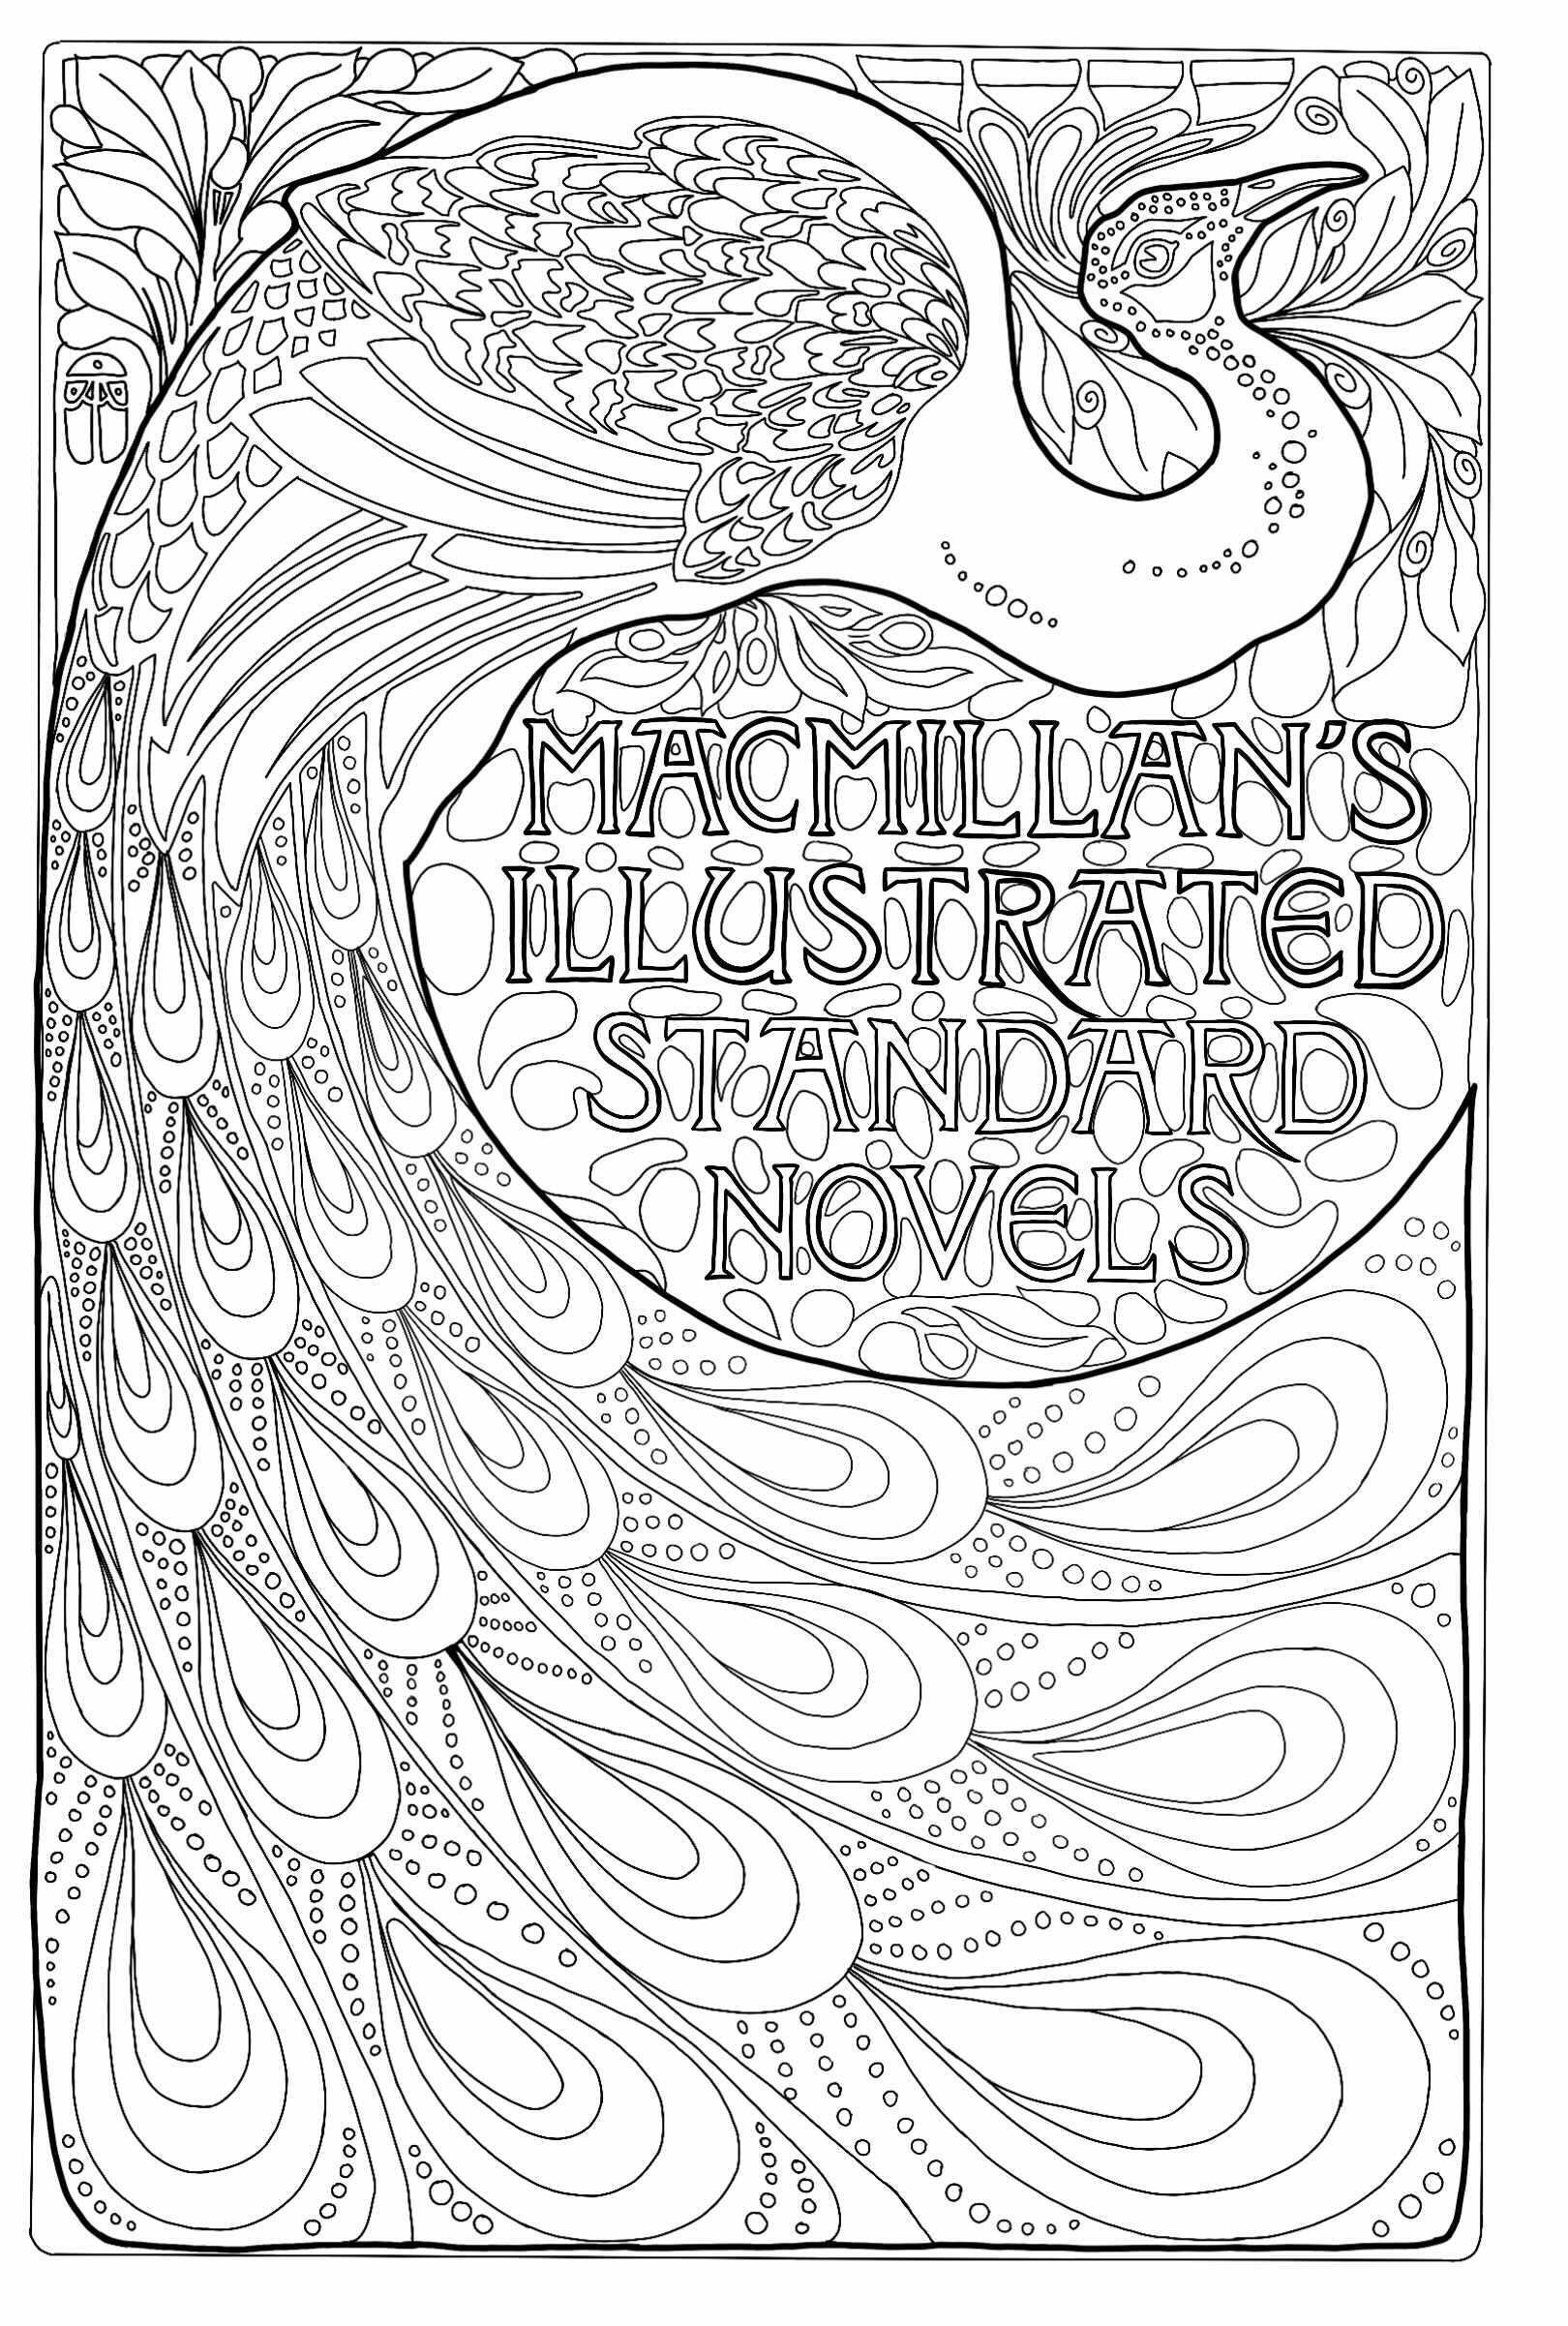 MacMillan's Illustrierte Standardromane: Jugendstil-Bucheinband mit Pfau (1896). Erstellt von Albert Angus Turbayne, amerikanischer Illustrator (1866, 1940).